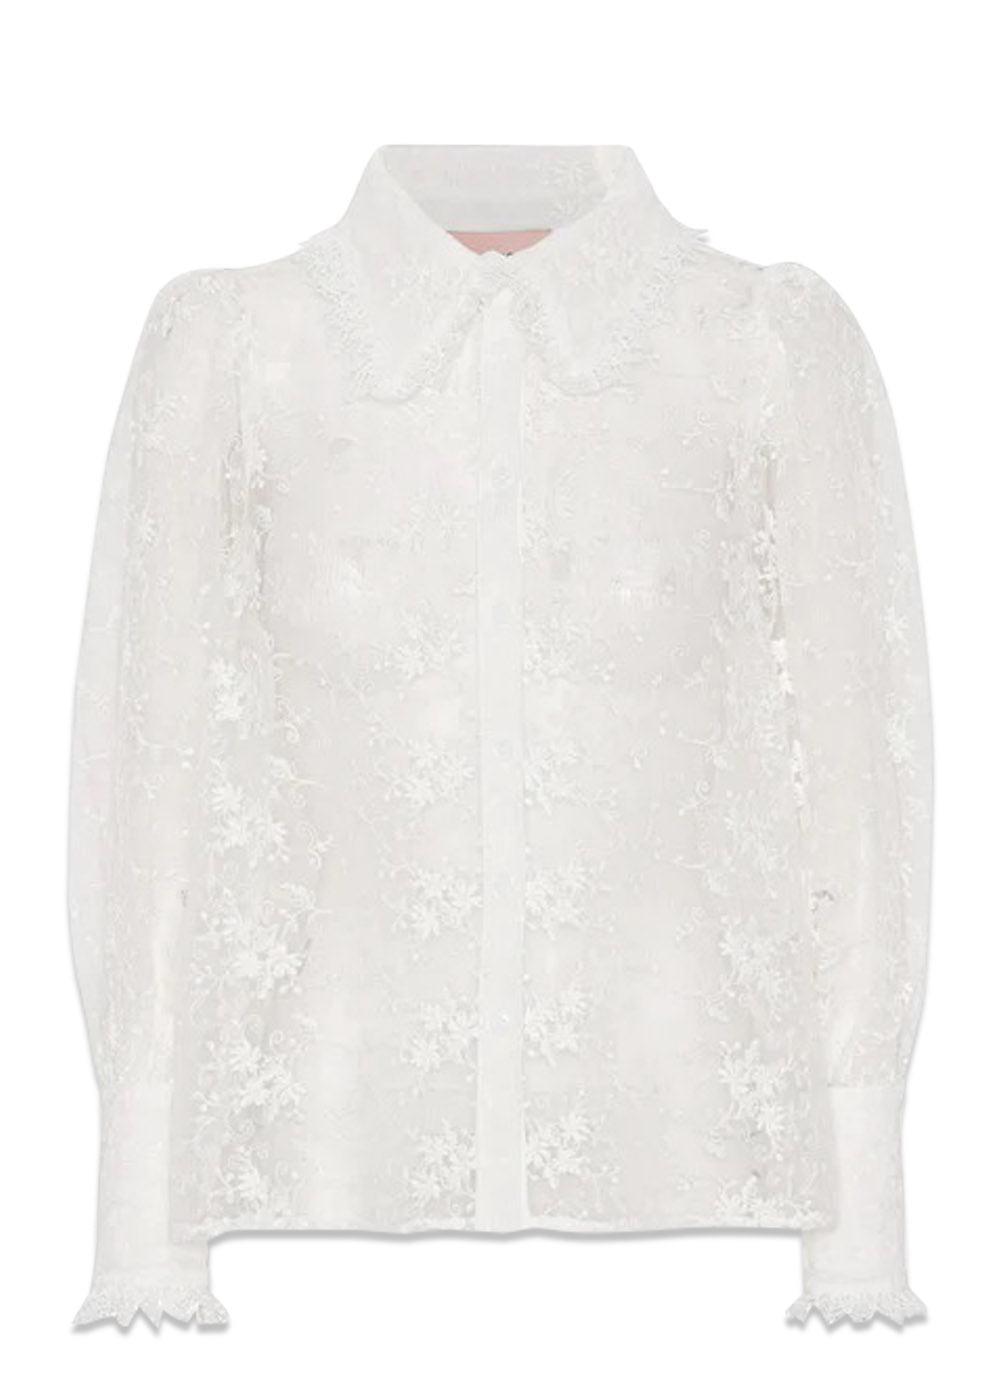 HUNKØN's Vala Shirt - White. Køb shirts her.